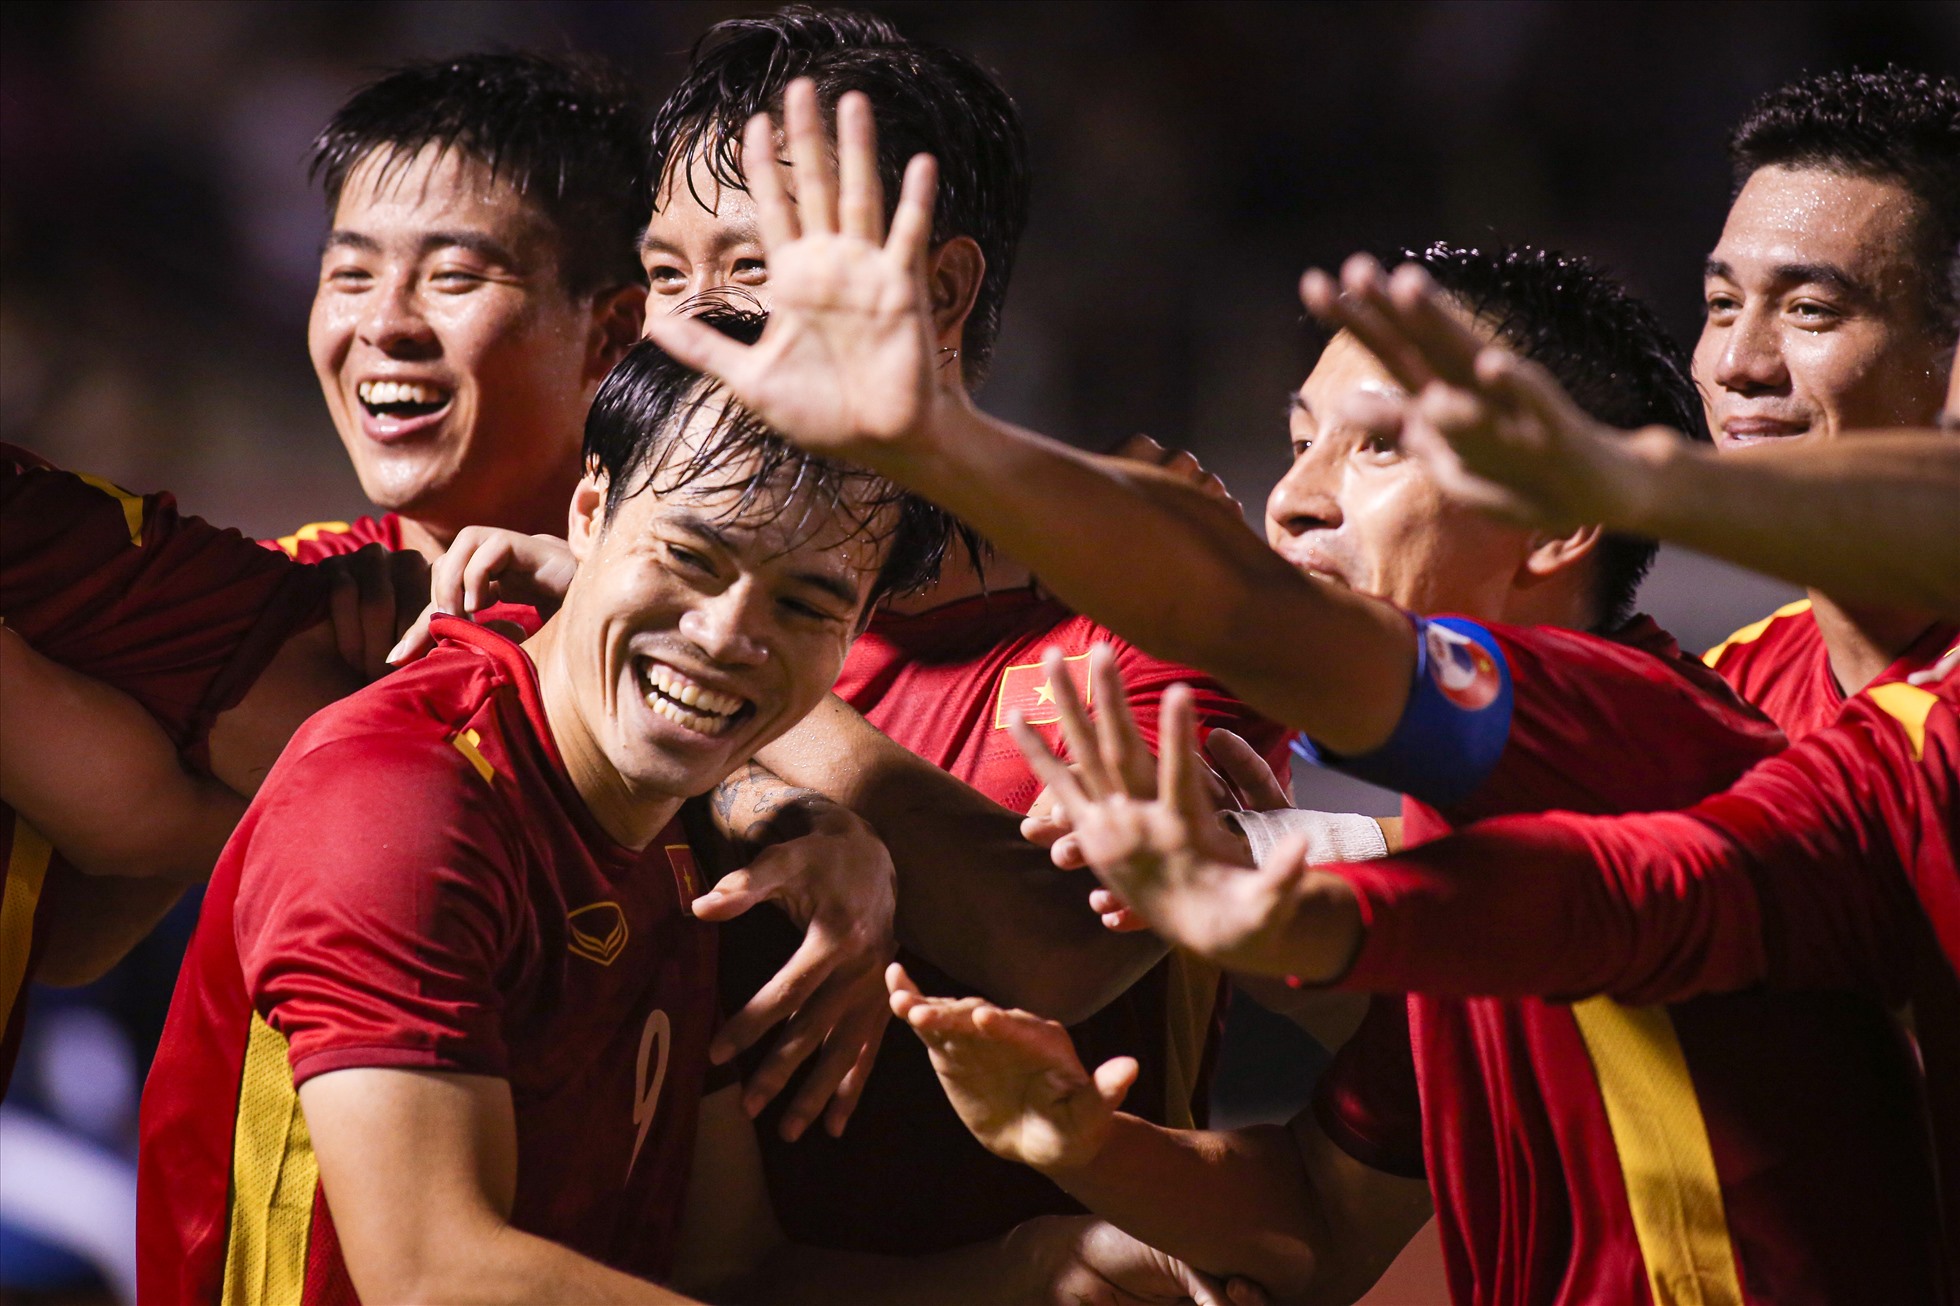 Văn Toàn: Đây là chân sút tài năng của đội tuyển bóng đá U23 Việt Nam, người đã ghi bàn ở nhiều trận đấu quan trọng. Hãy cùng xem những hình ảnh về Văn Toàn, từ những đường chuyền điêu luyện cho đến những bàn thắng ấn tượng, và cả những nụ cười tươi tắn trên sân cỏ.